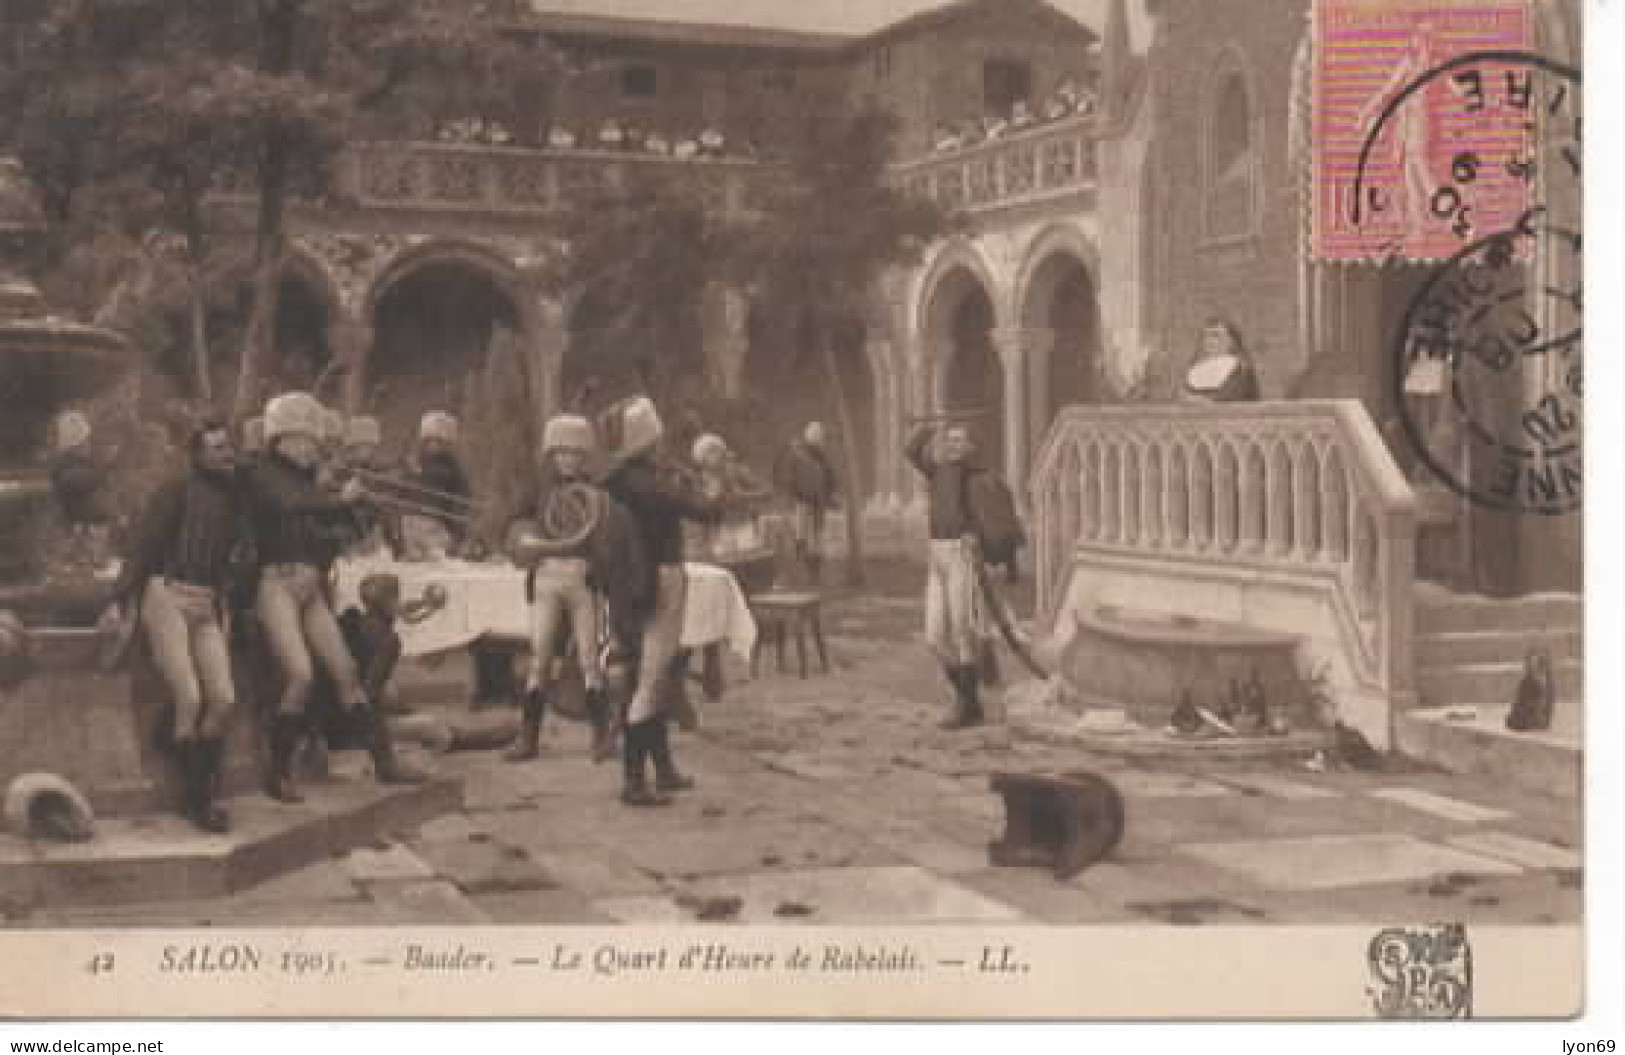 SALON 1905 42 BAADER  LE QUARD  D HEURE  DE RABELAIS - Peintures & Tableaux